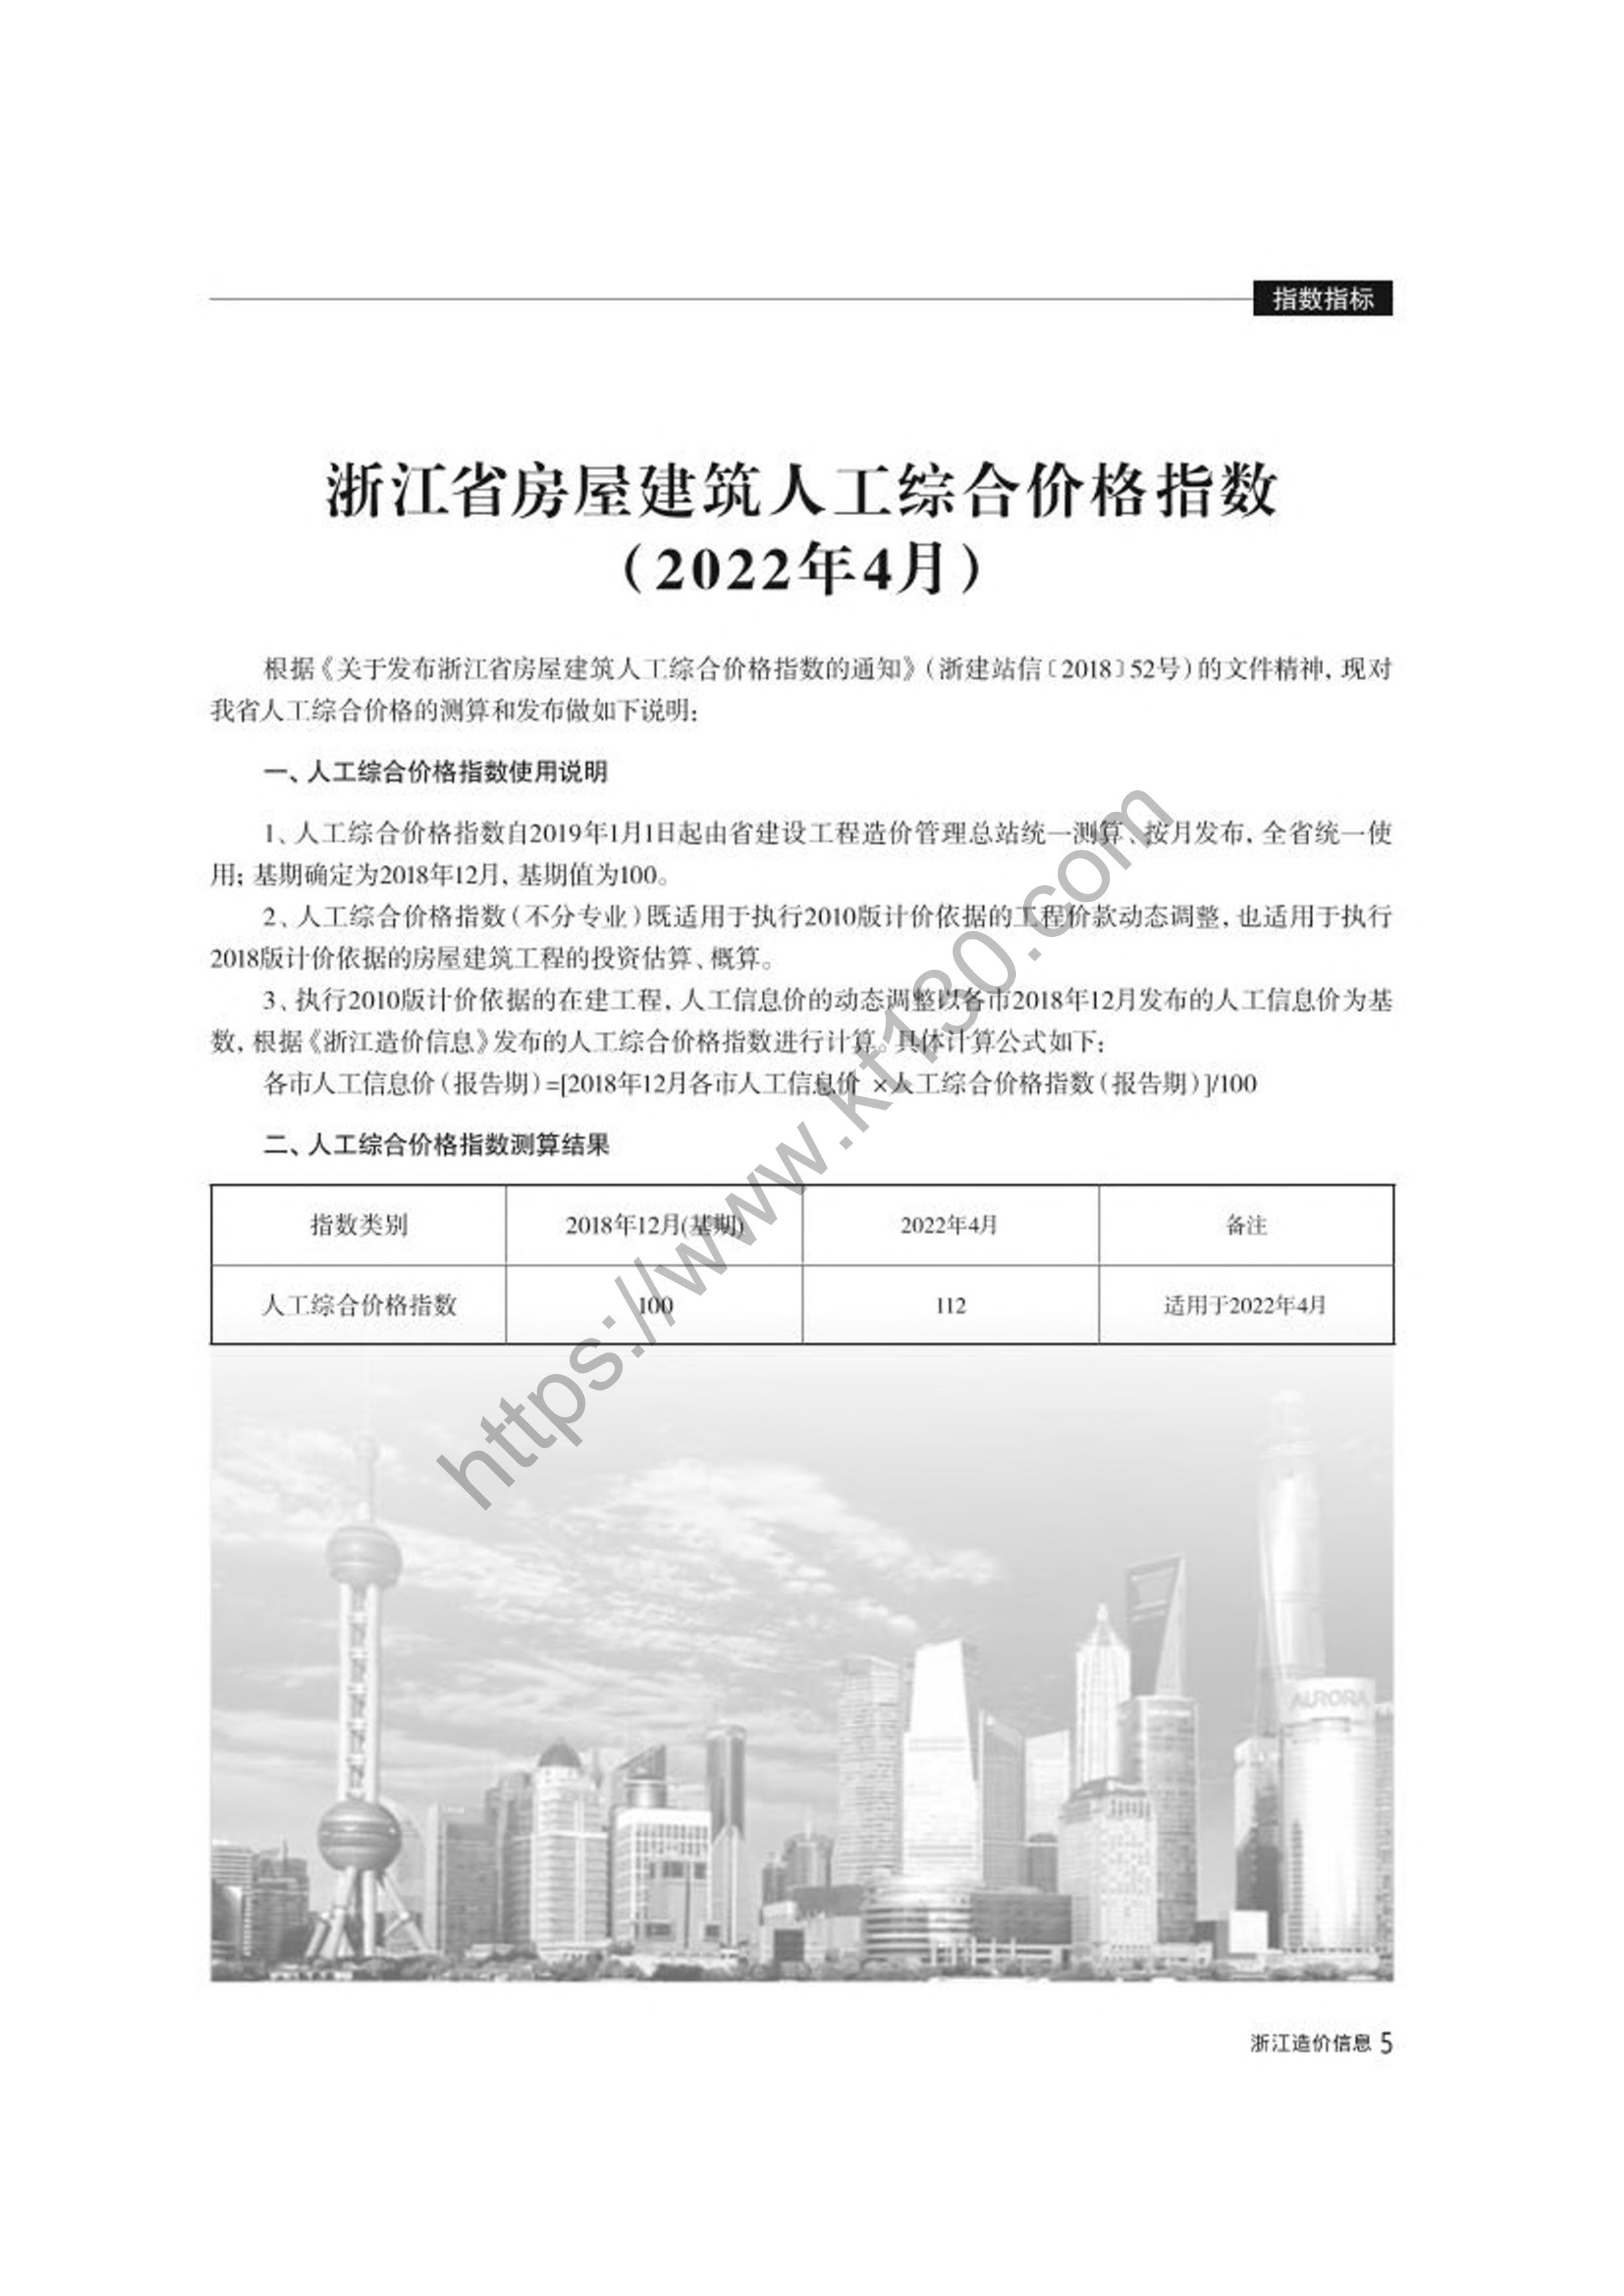 浙江省2022年4月建筑材料价_封面_29715